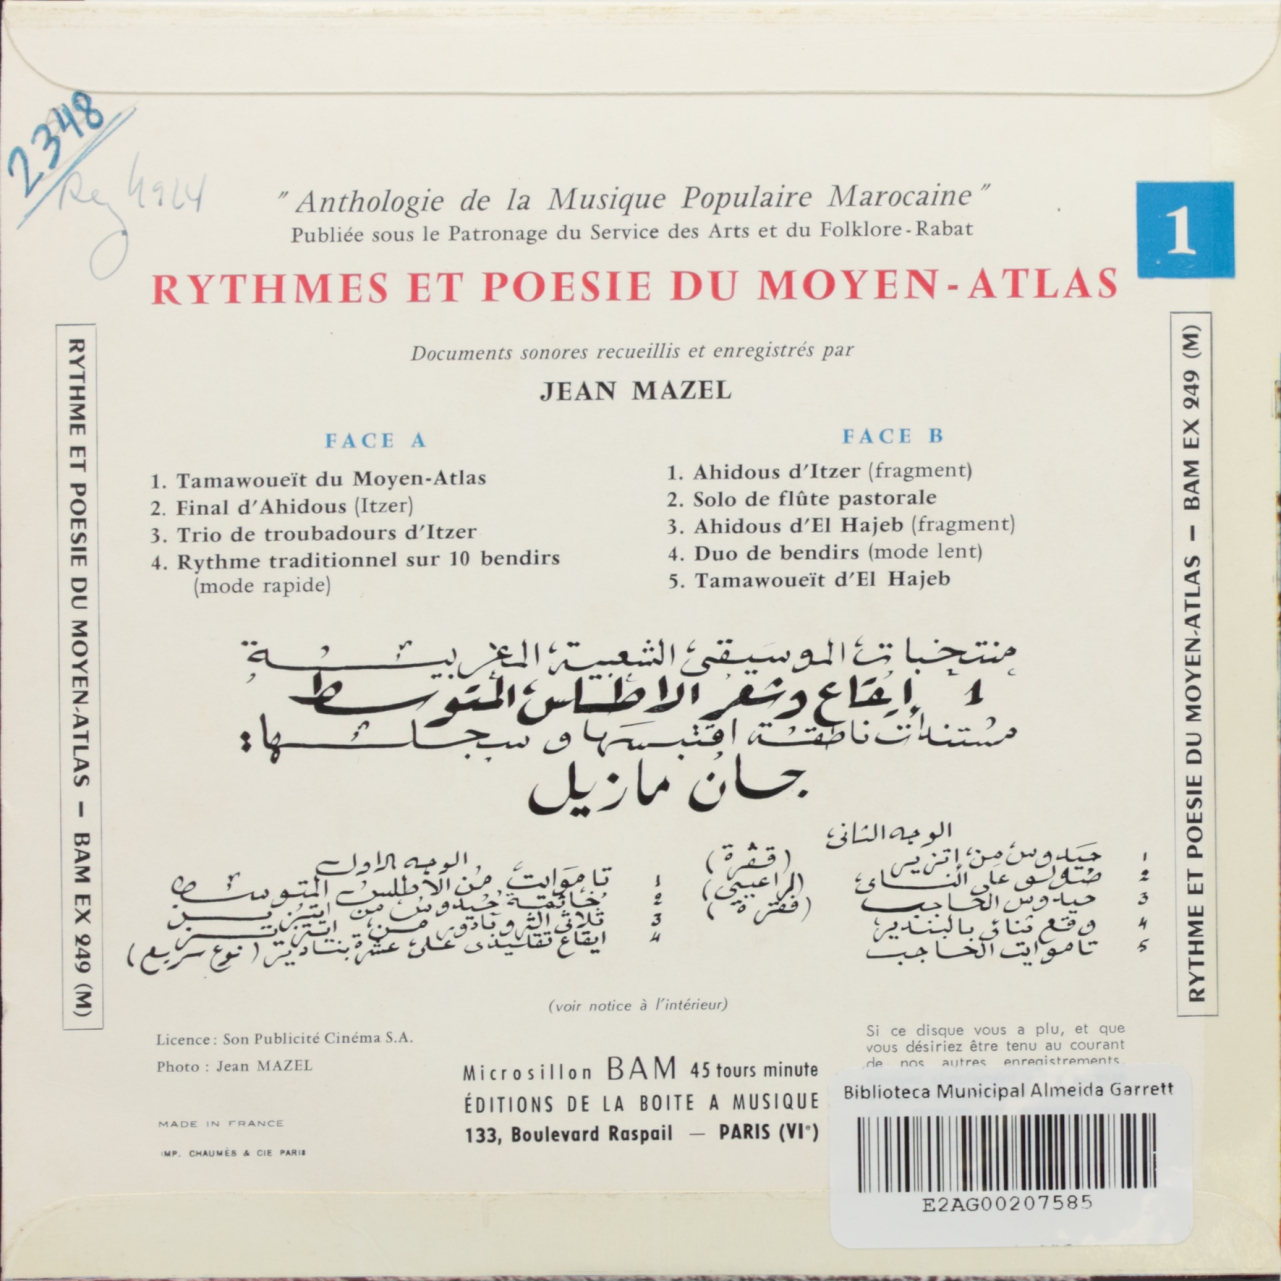 Anthologie de Musique Populaire Marocaine nº 1: Rythmes et Poesie du Moyen-Atlas